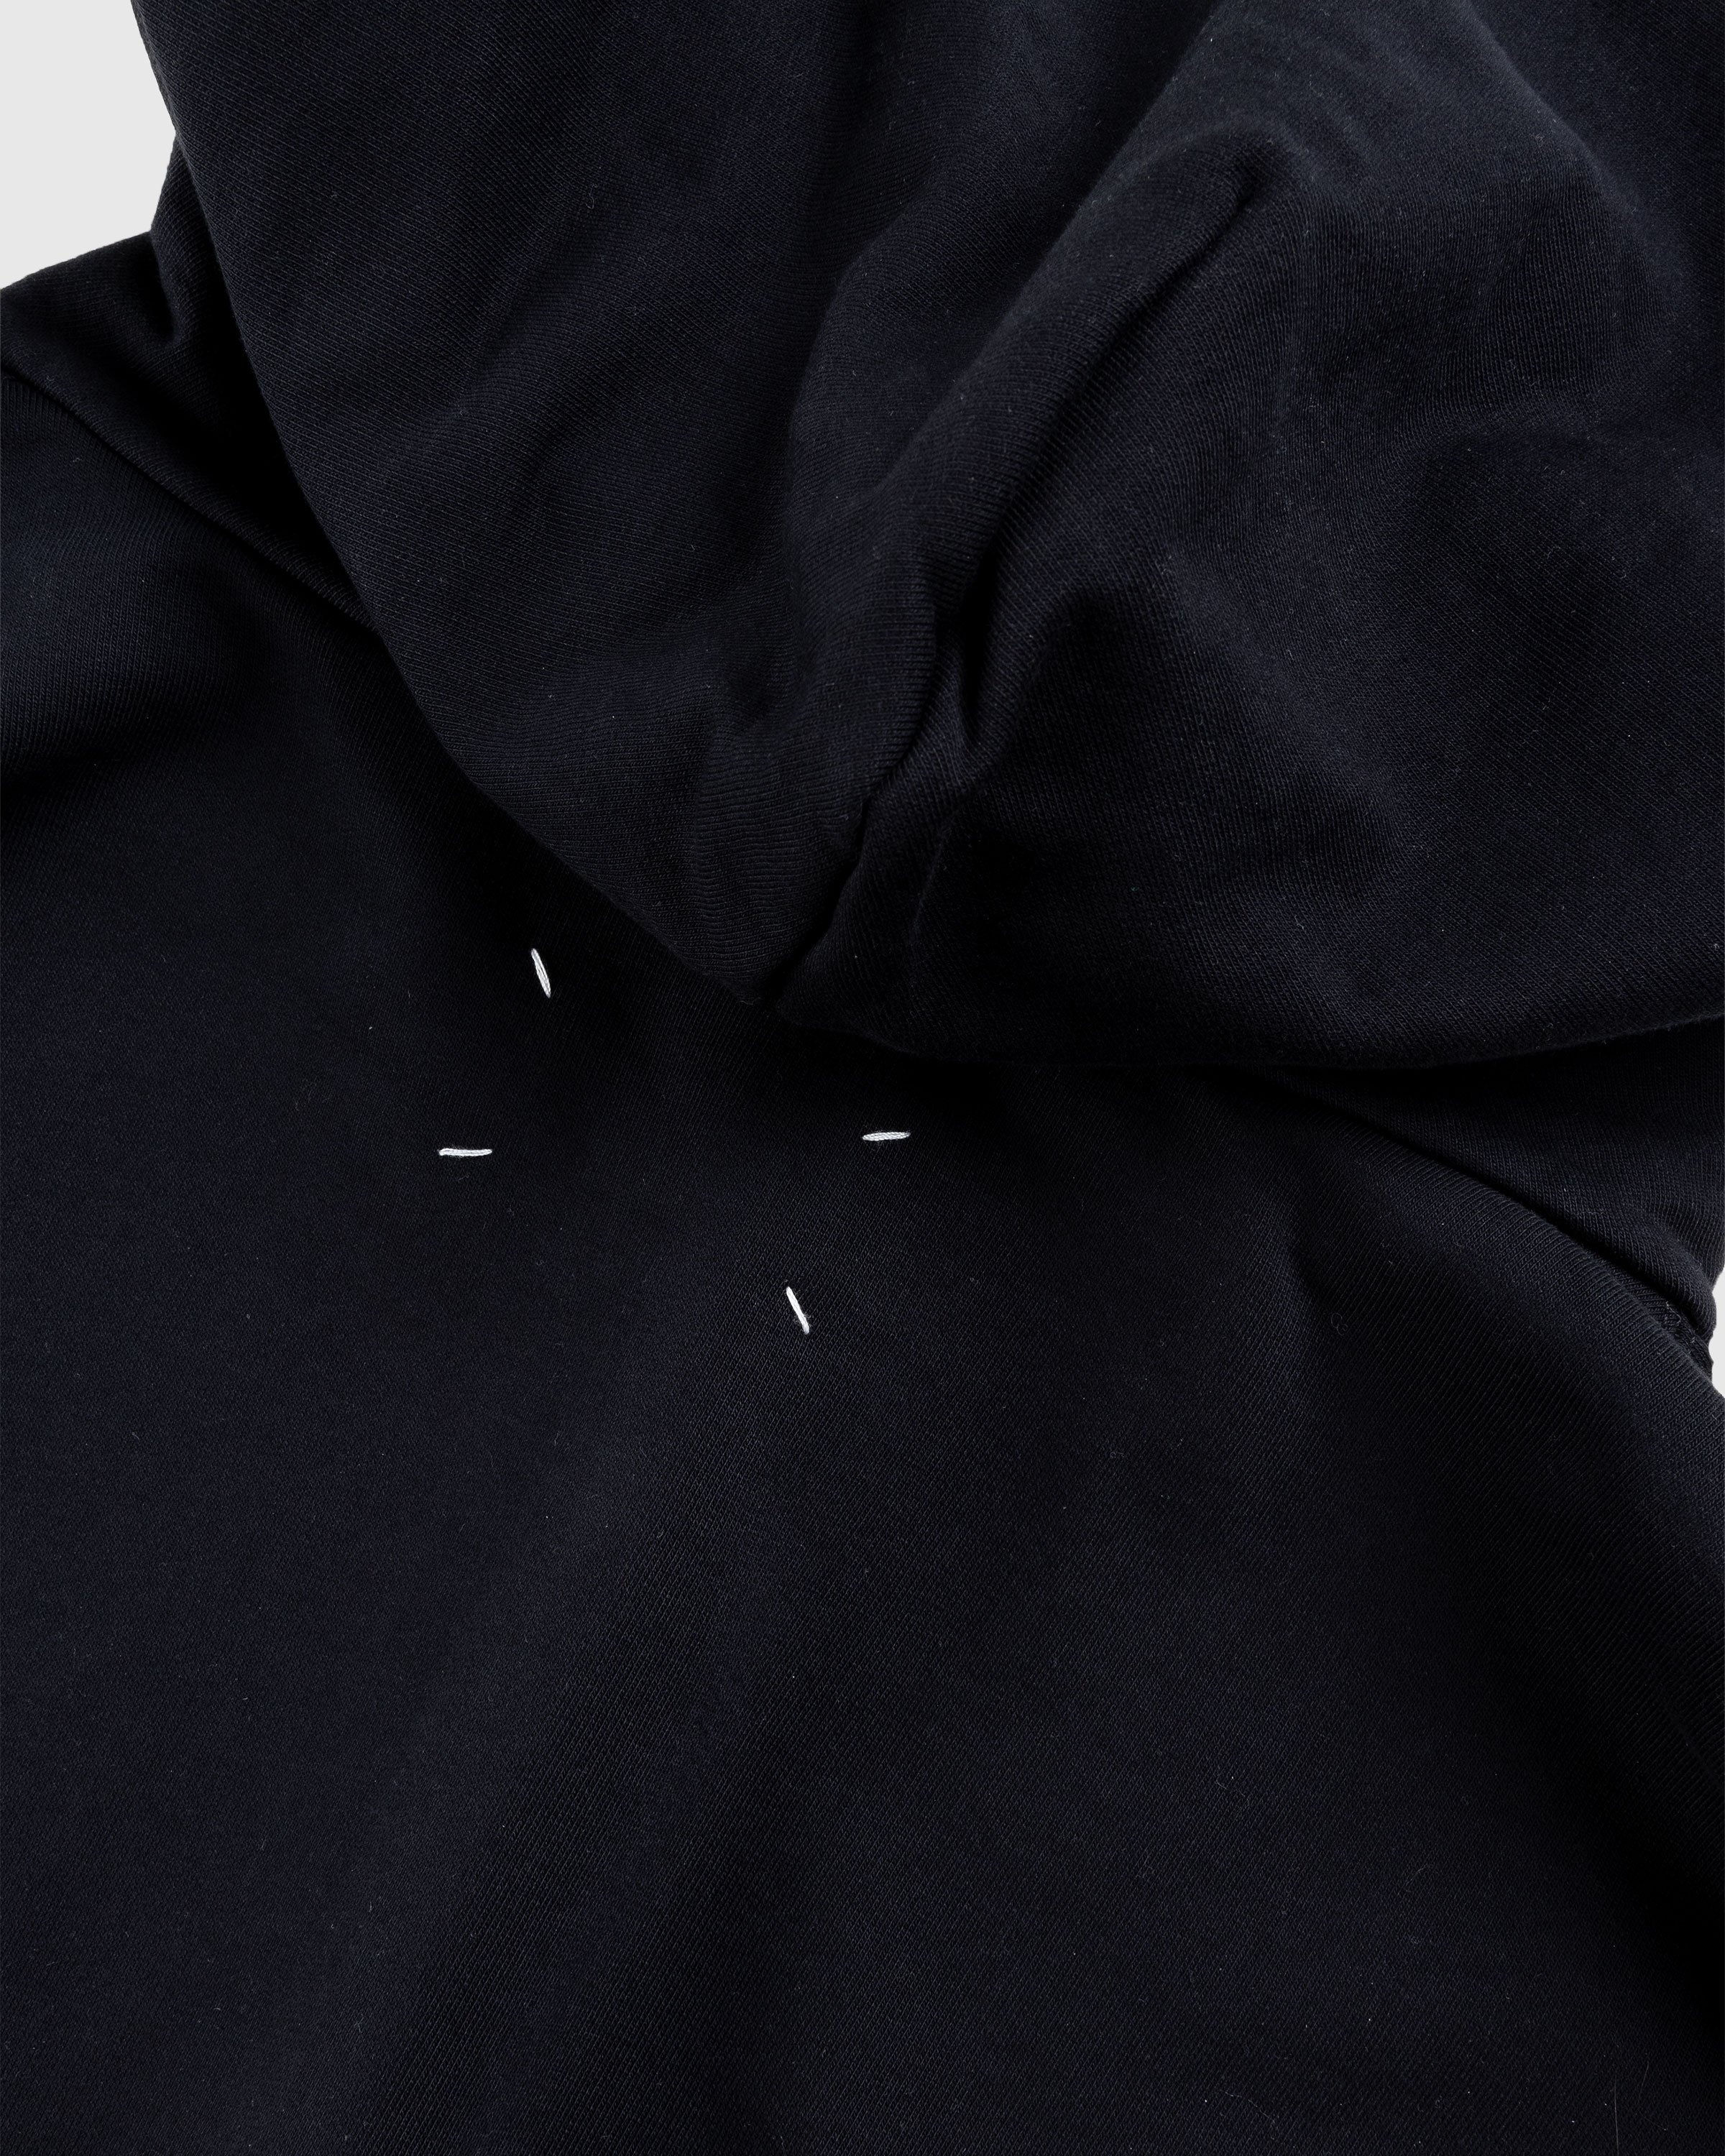 Maison Margiela – Numerical Logo Hoodie Black - Sweats - Black - Image 6